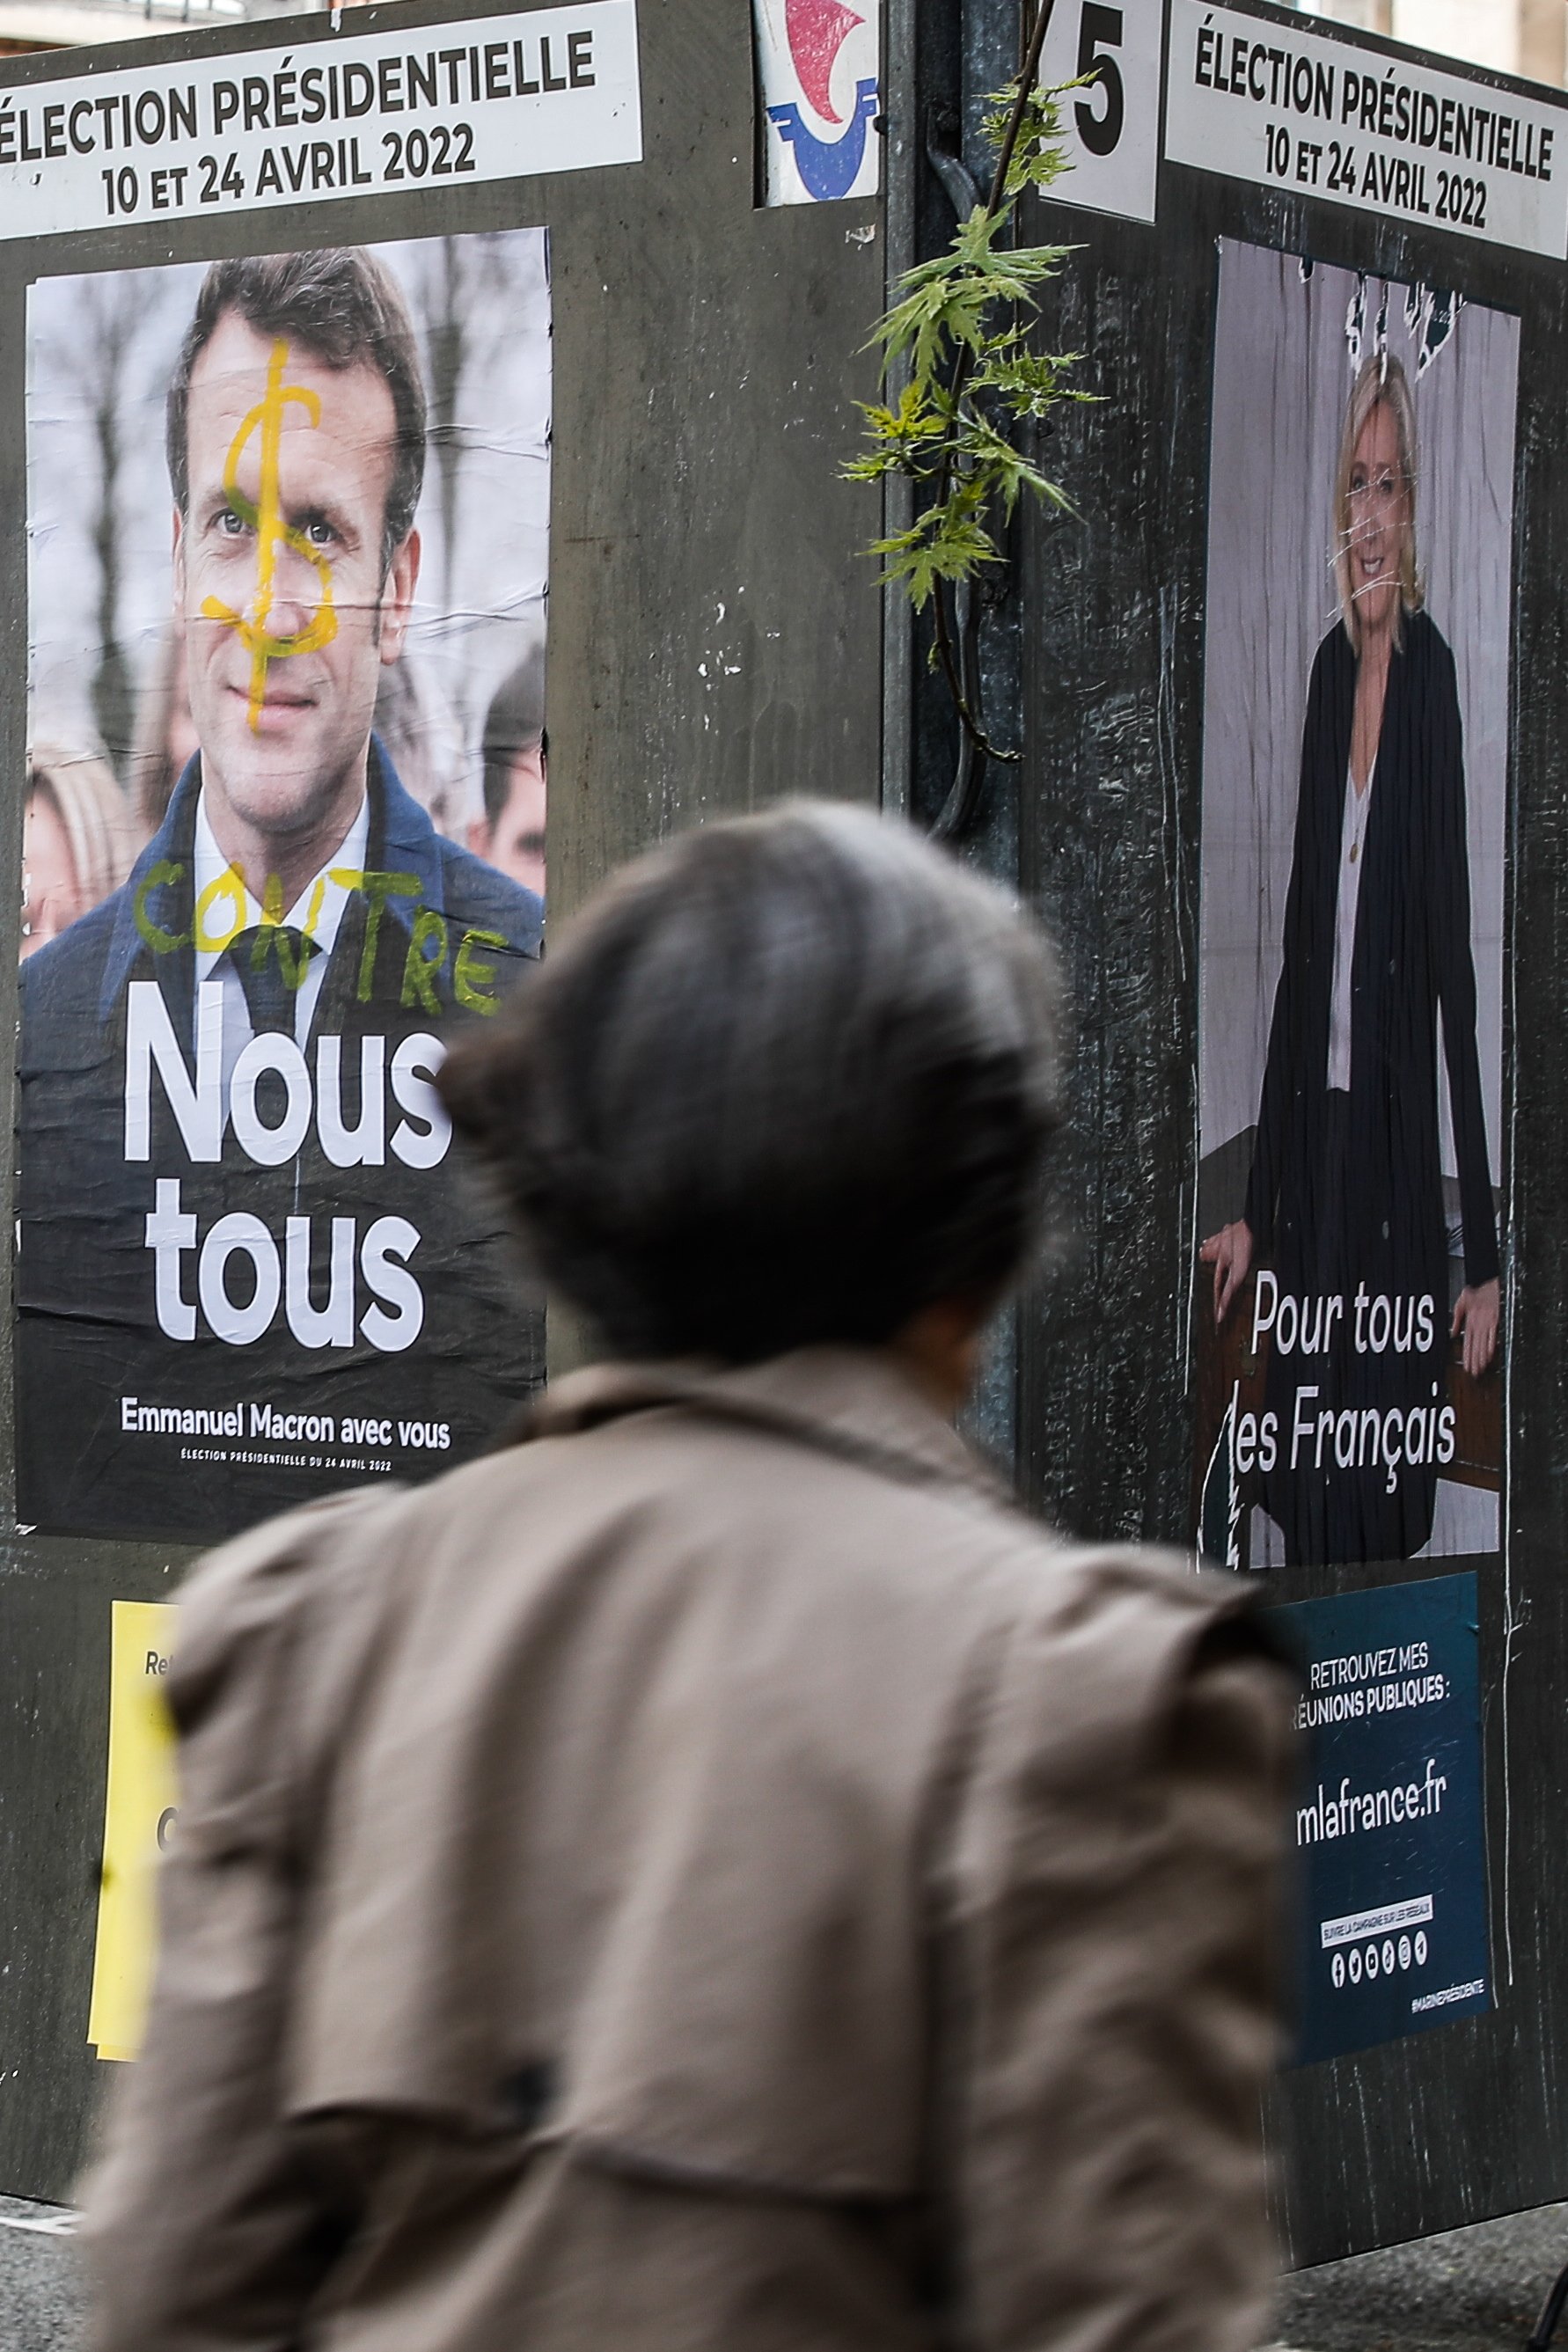 L’extrema dreta torna a amenaçar França i Europa